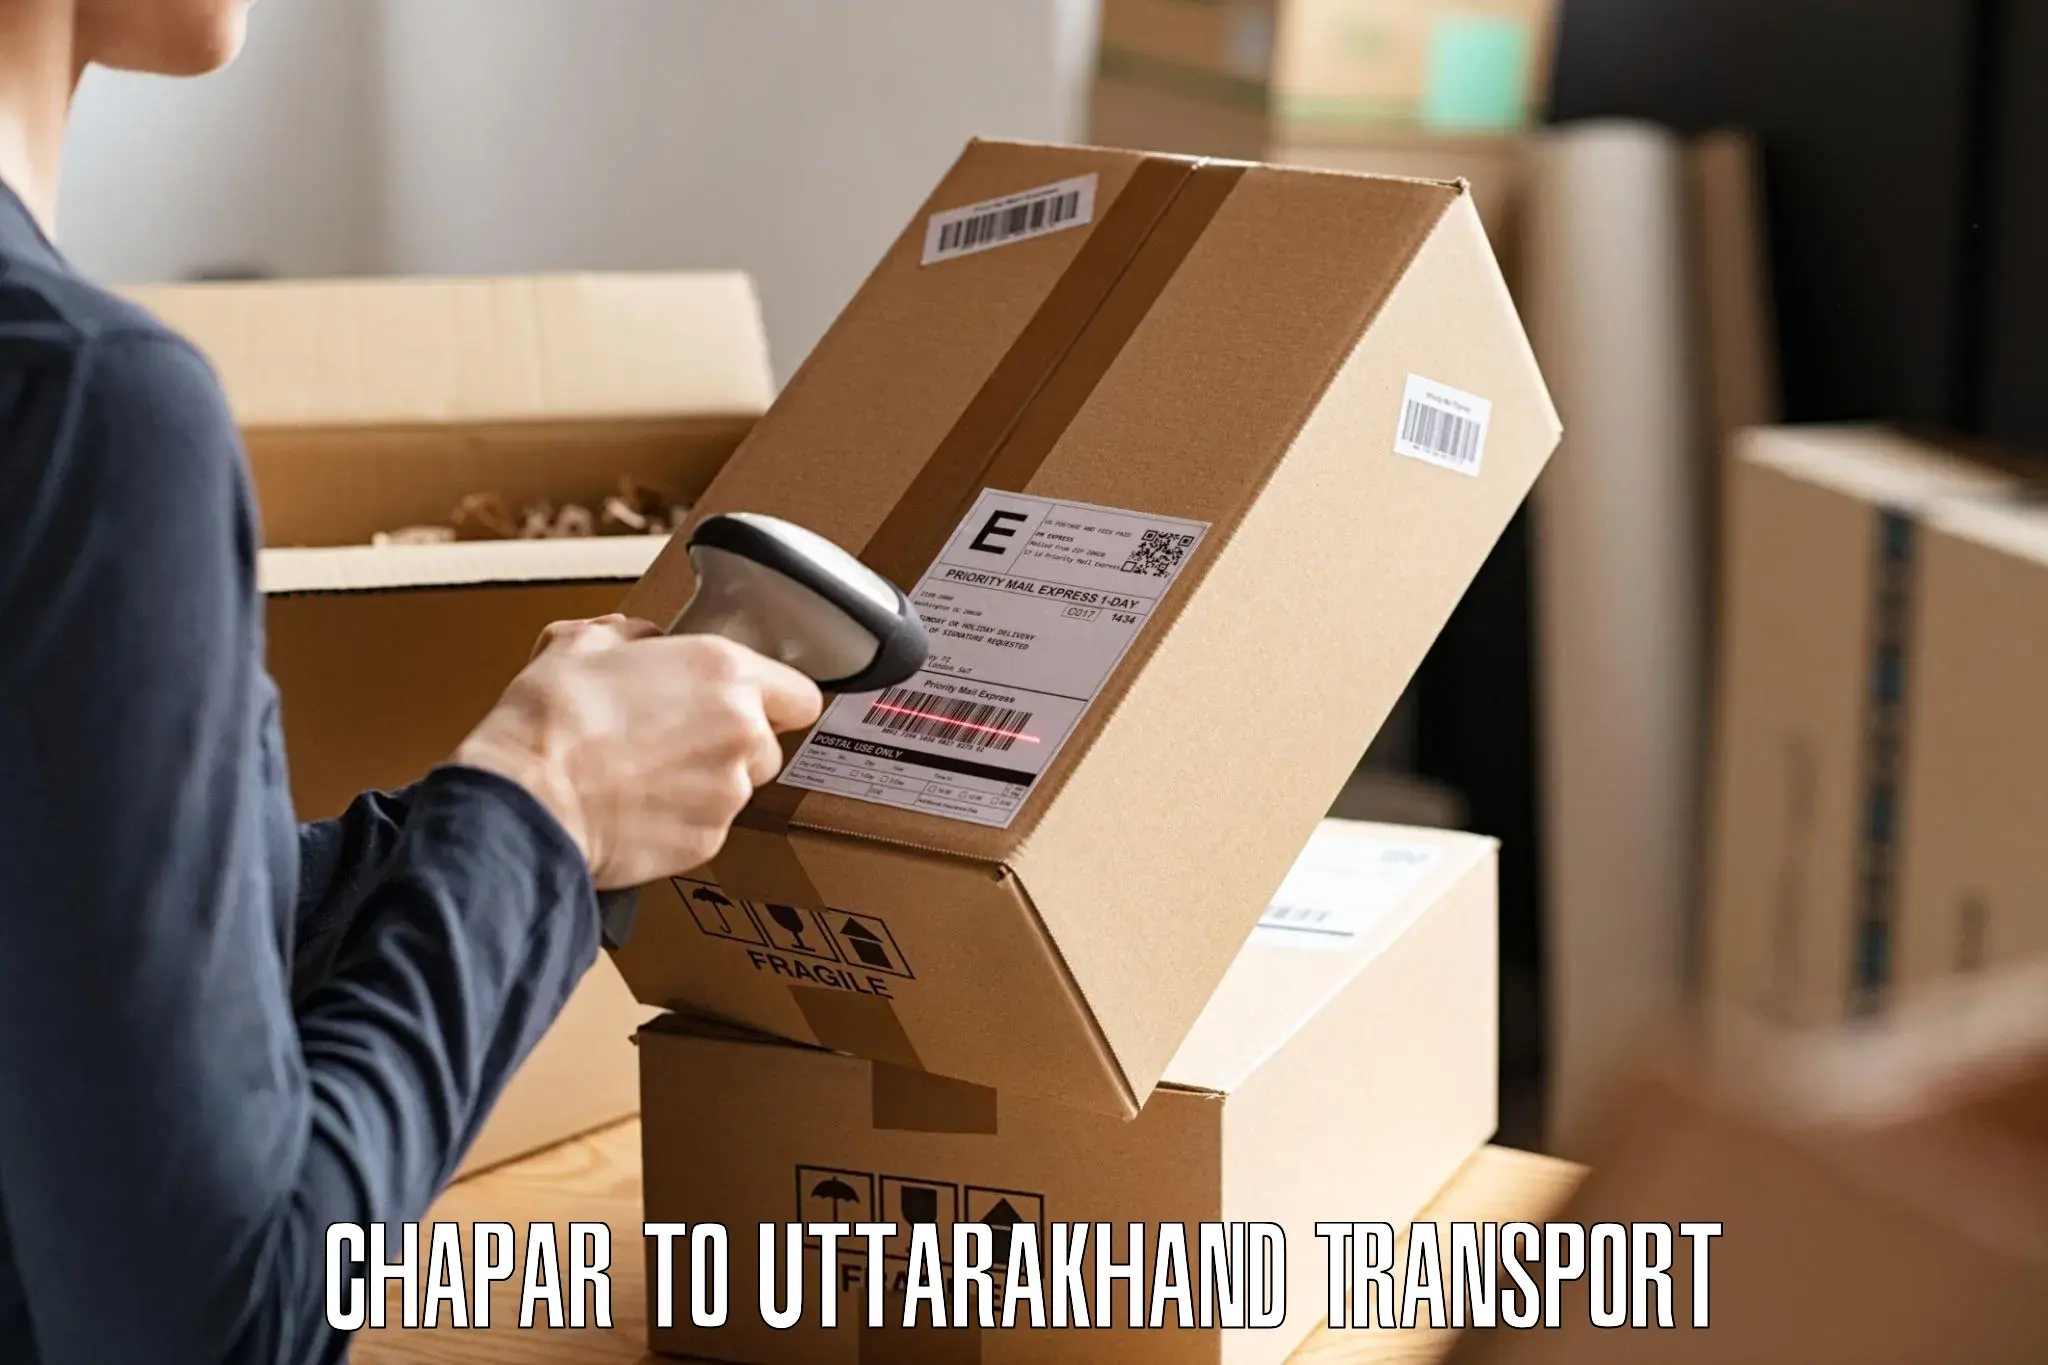 Pick up transport service Chapar to Gopeshwar